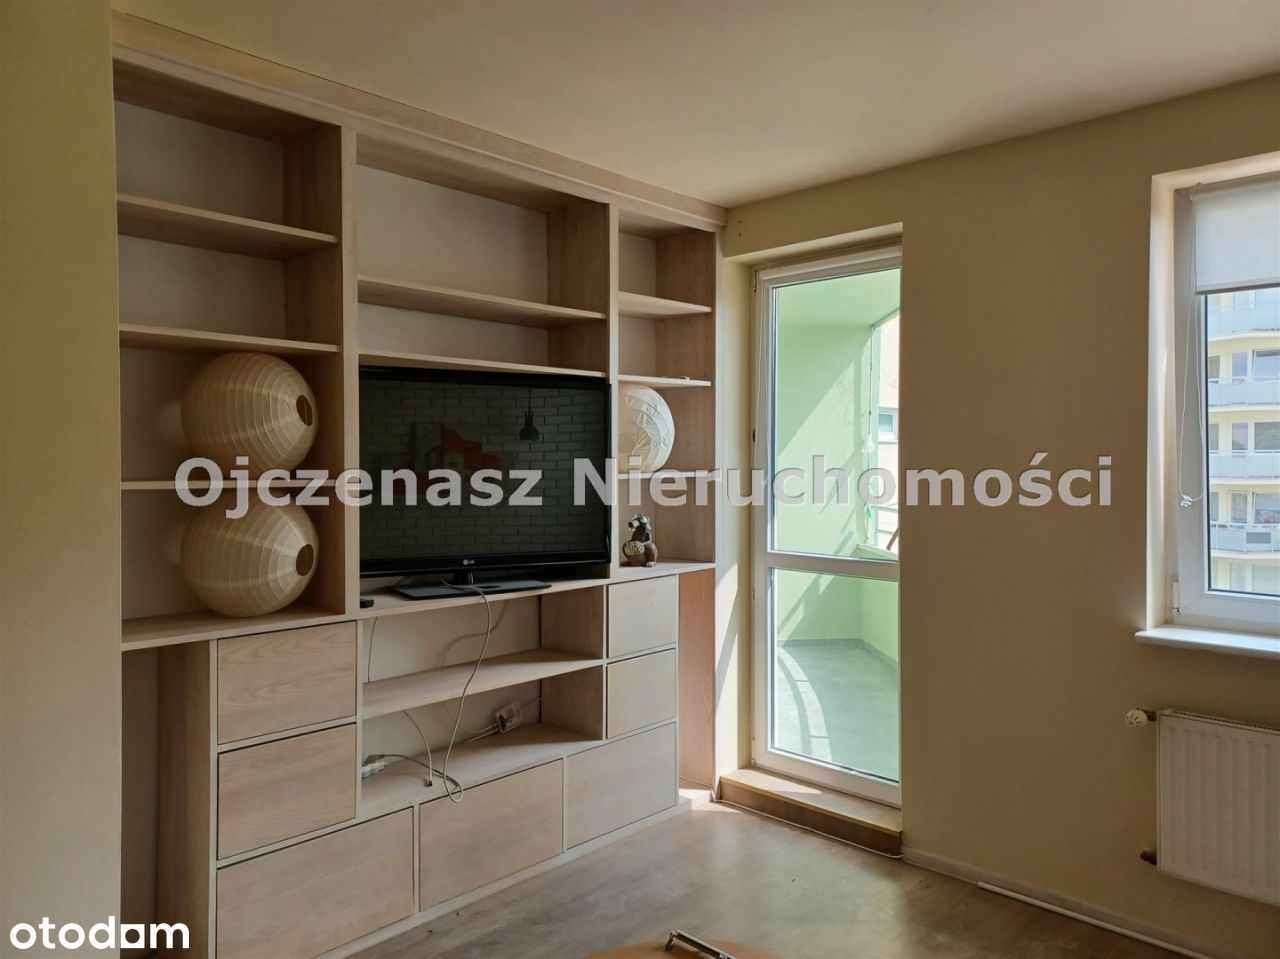 Mieszkanie, 37 m², Bydgoszcz